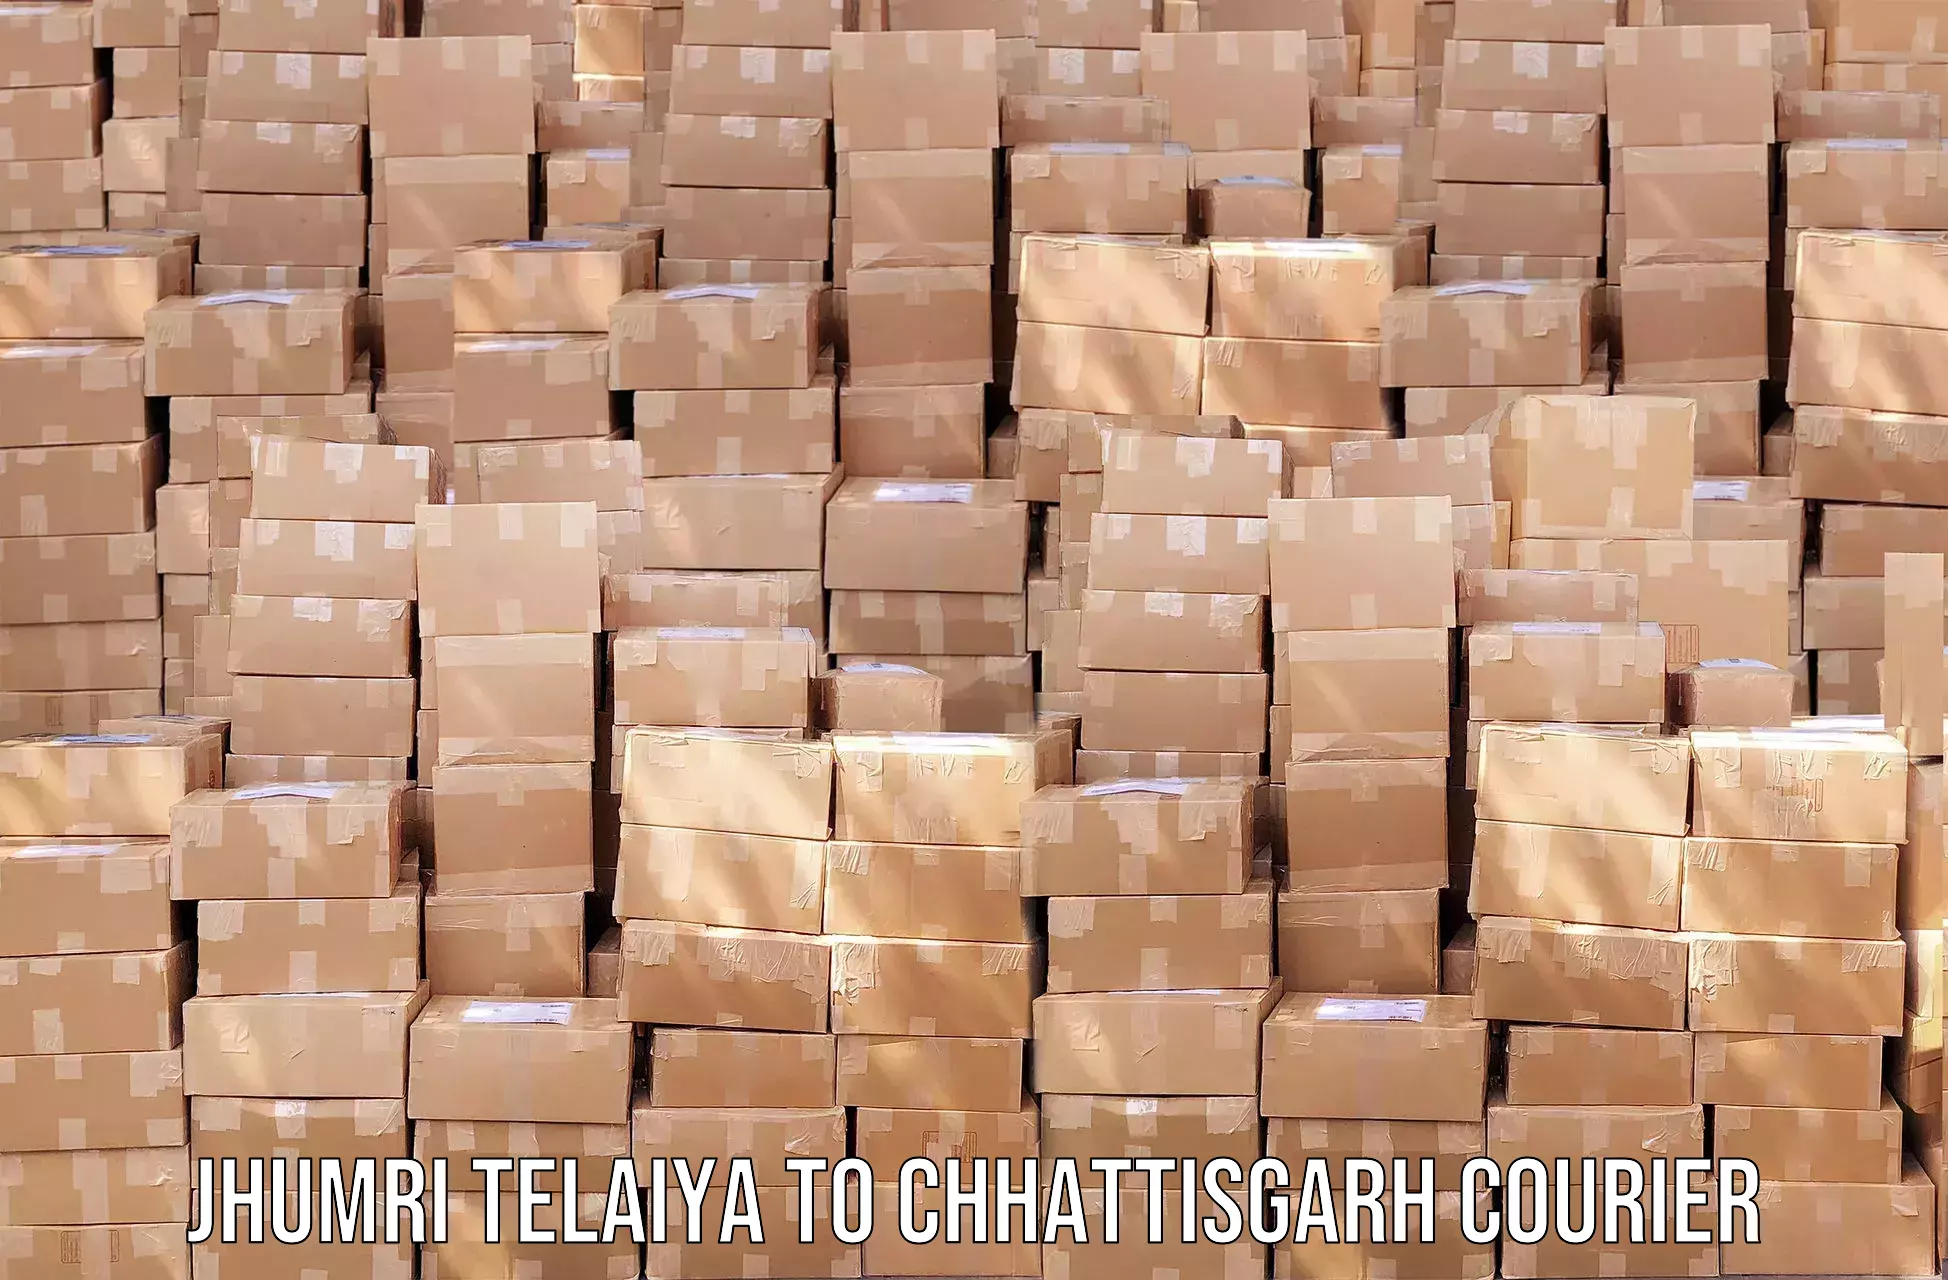 Automated parcel services Jhumri Telaiya to Dhamtari